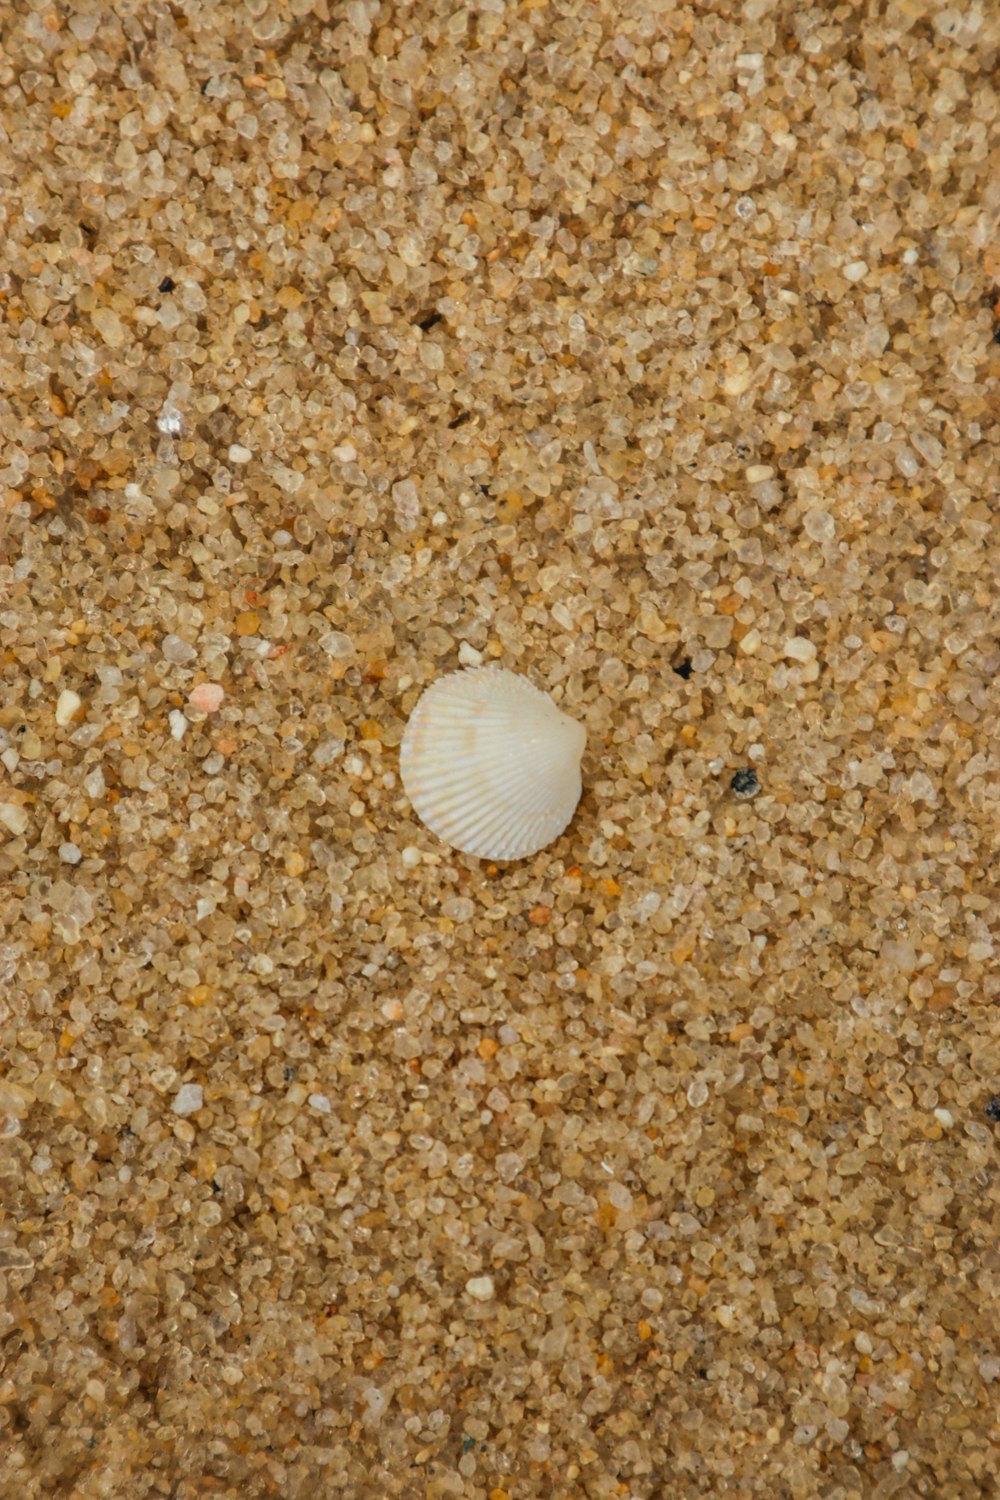 a seashell on a sandy beach near the ocean